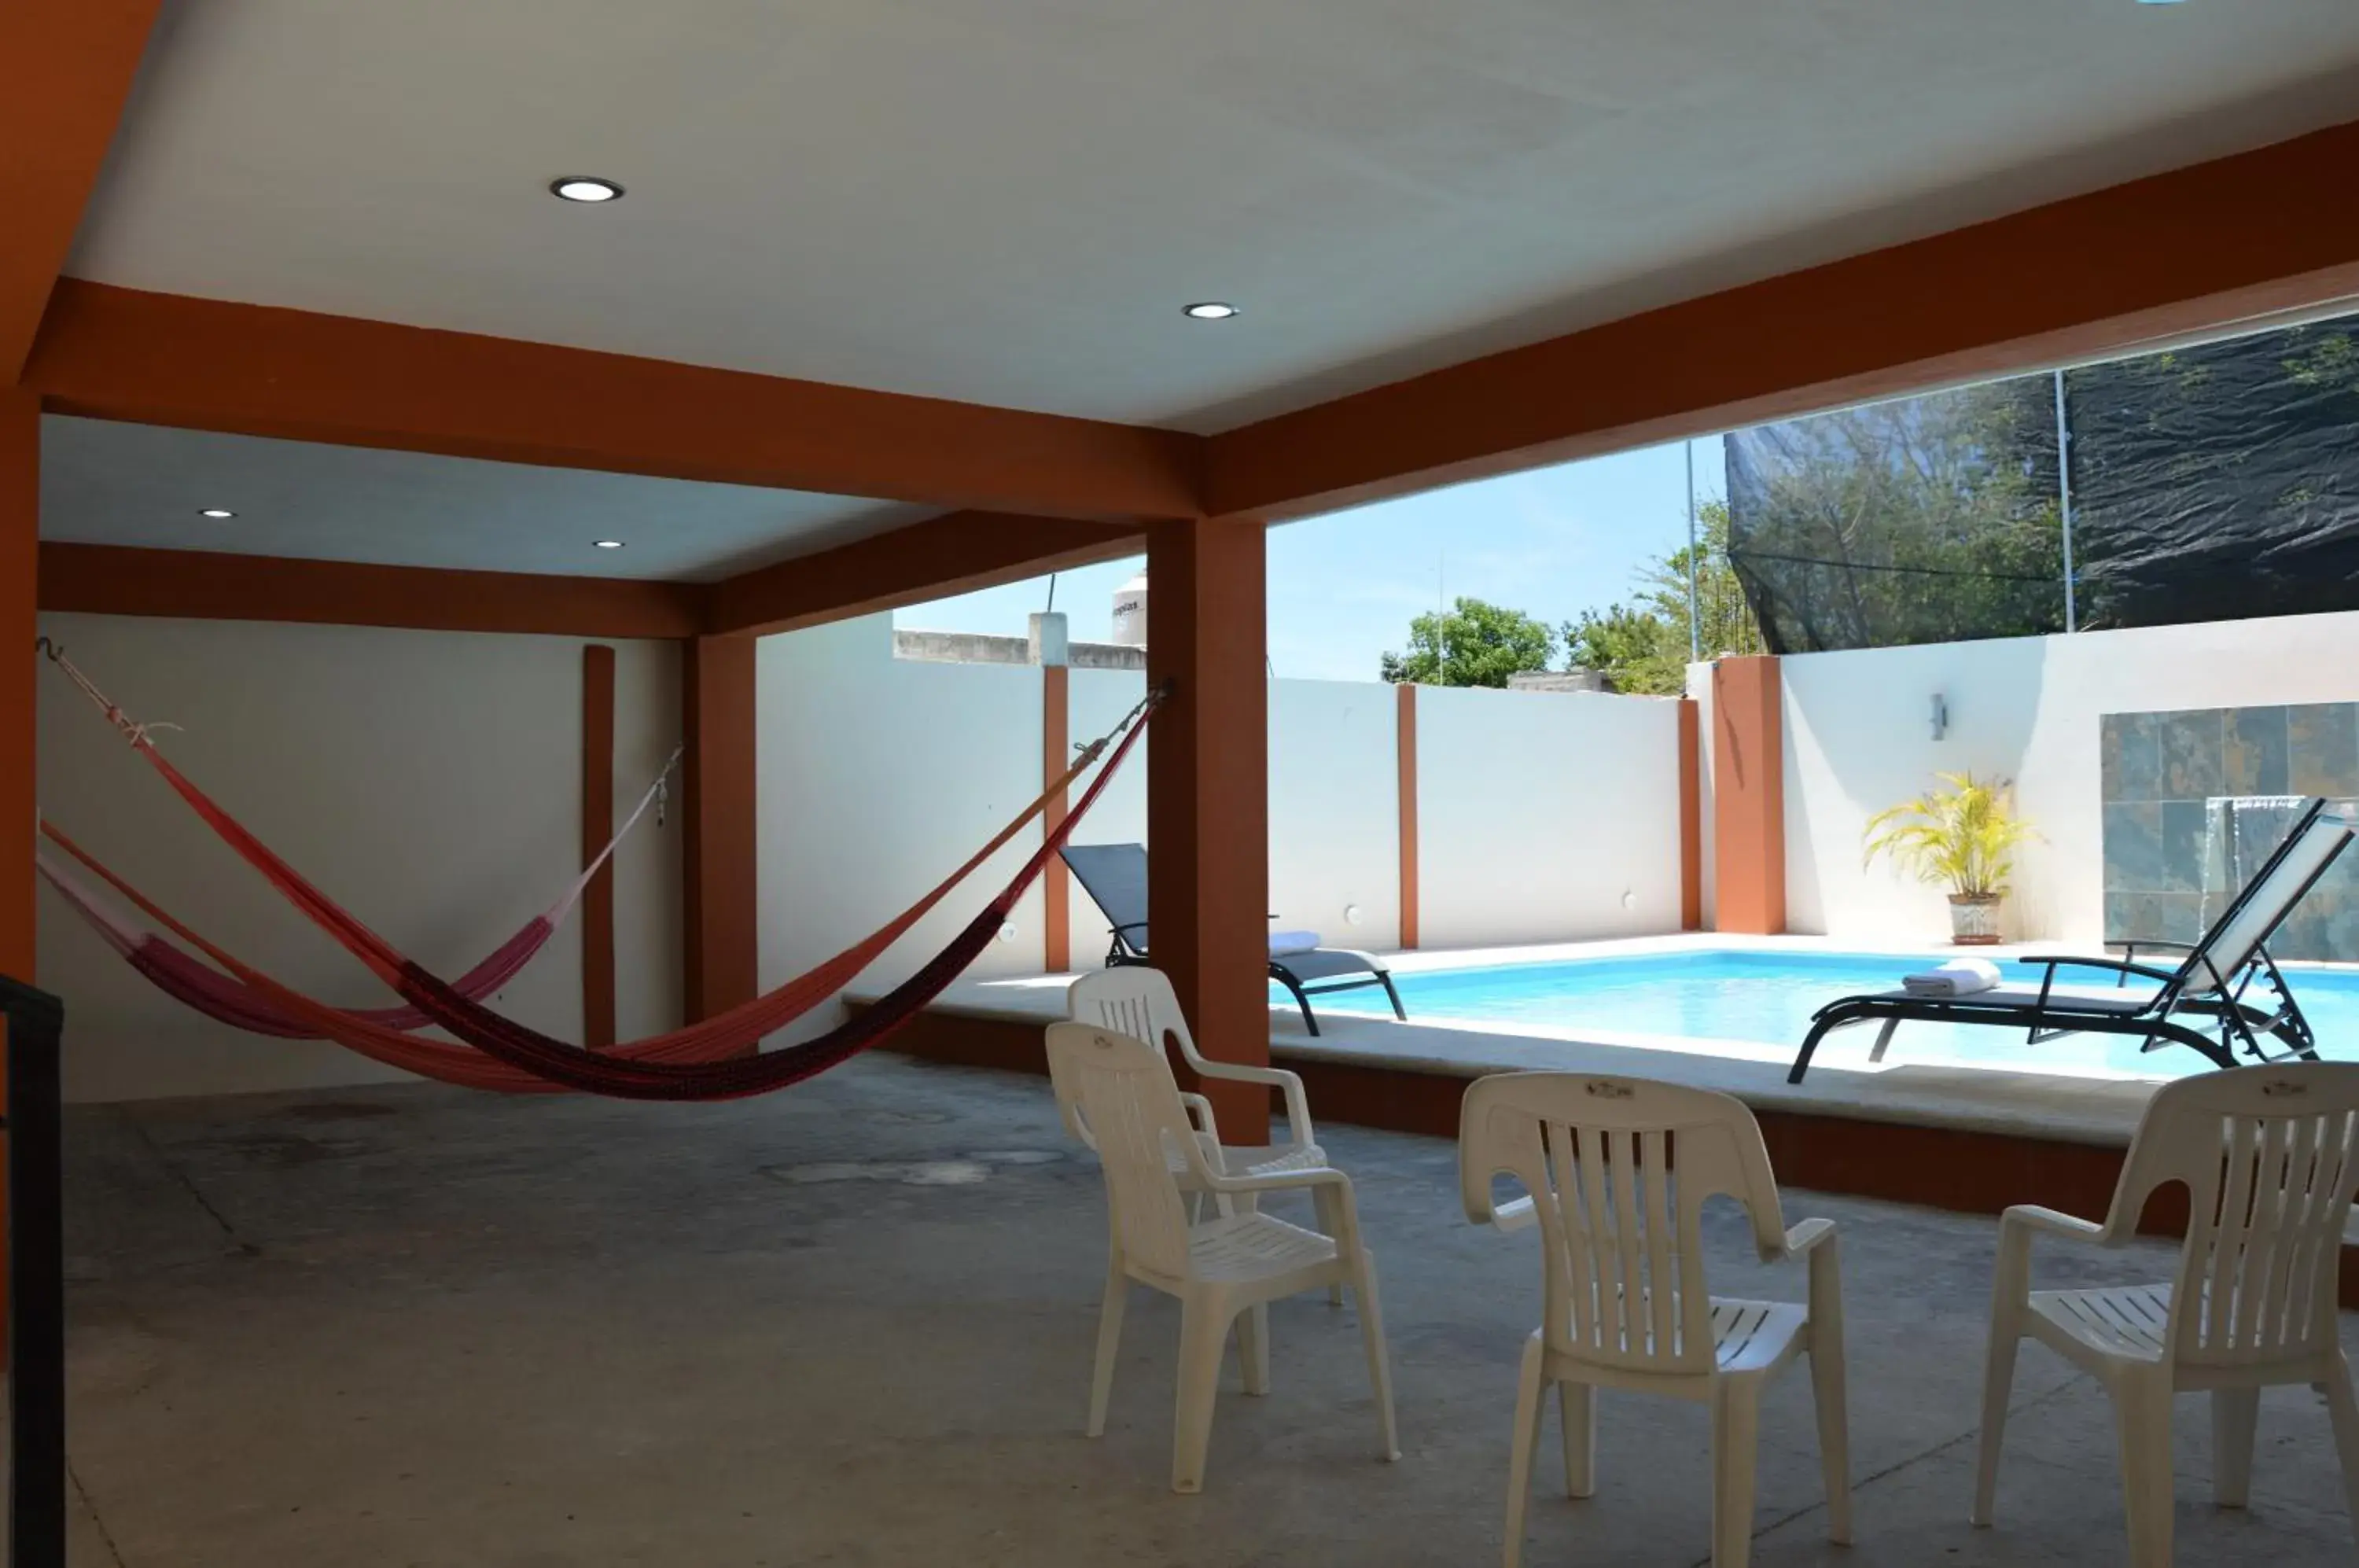 Swimming Pool in Terracota Corner Rooms